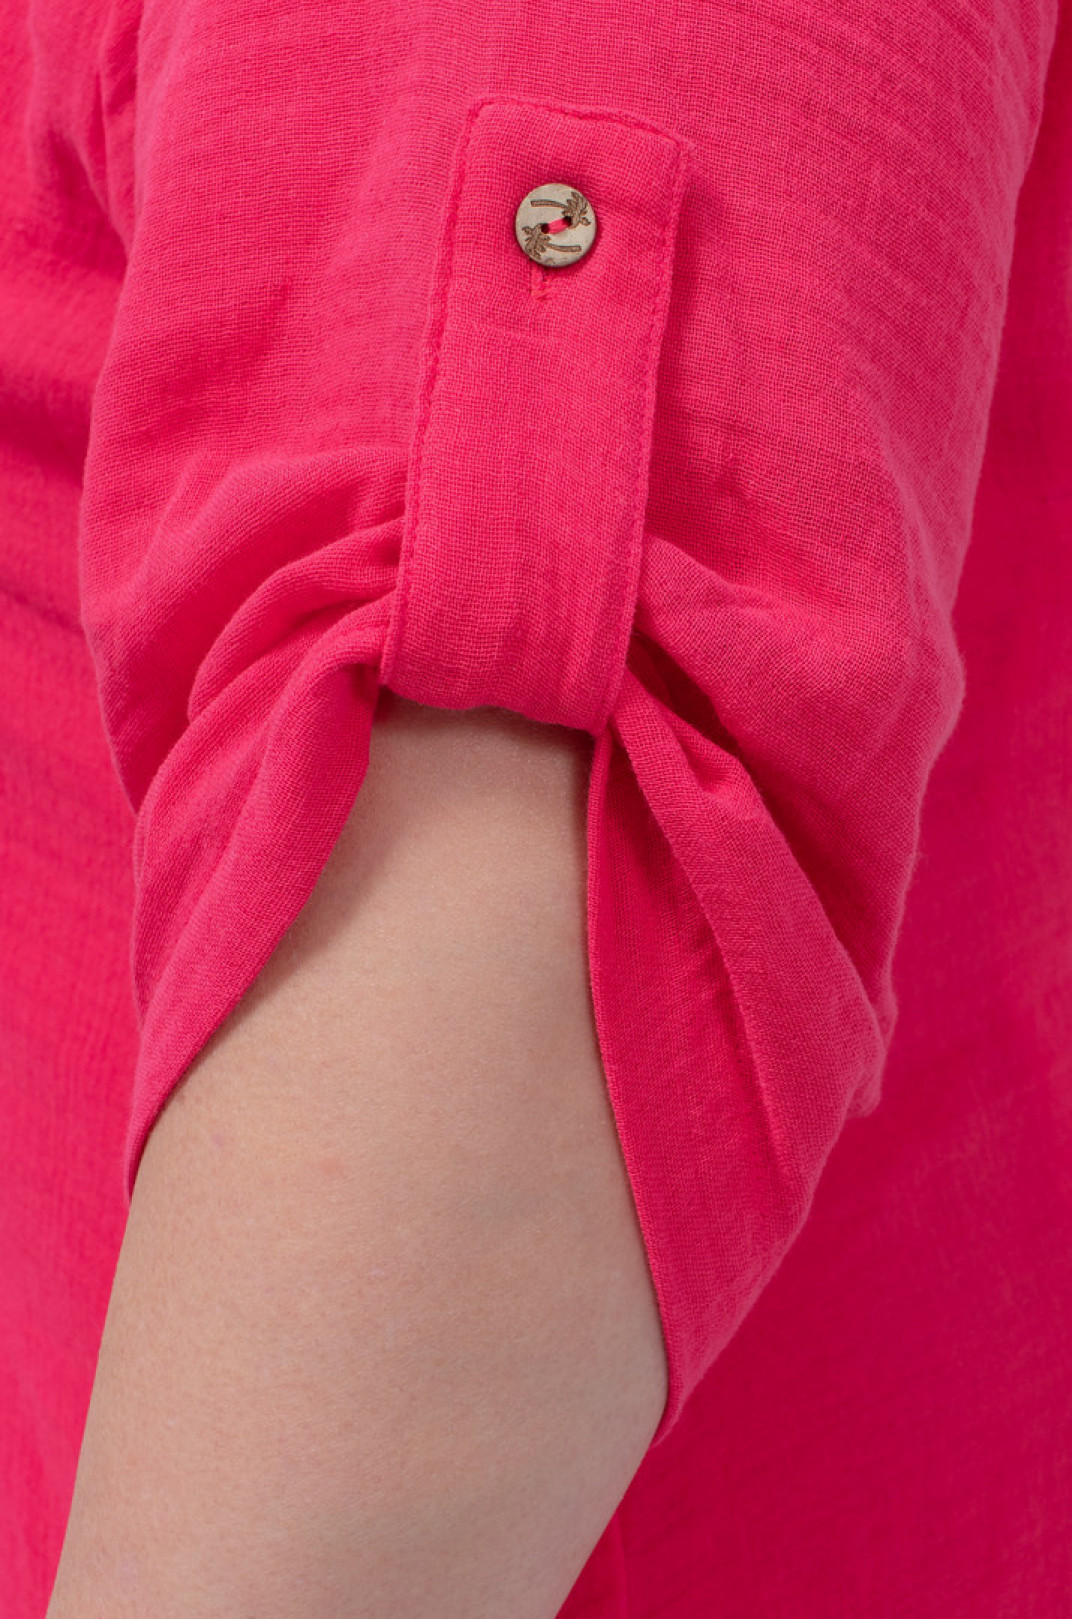 Платье рубашка макси лен со шнуровкой на спине в разных цветах батал